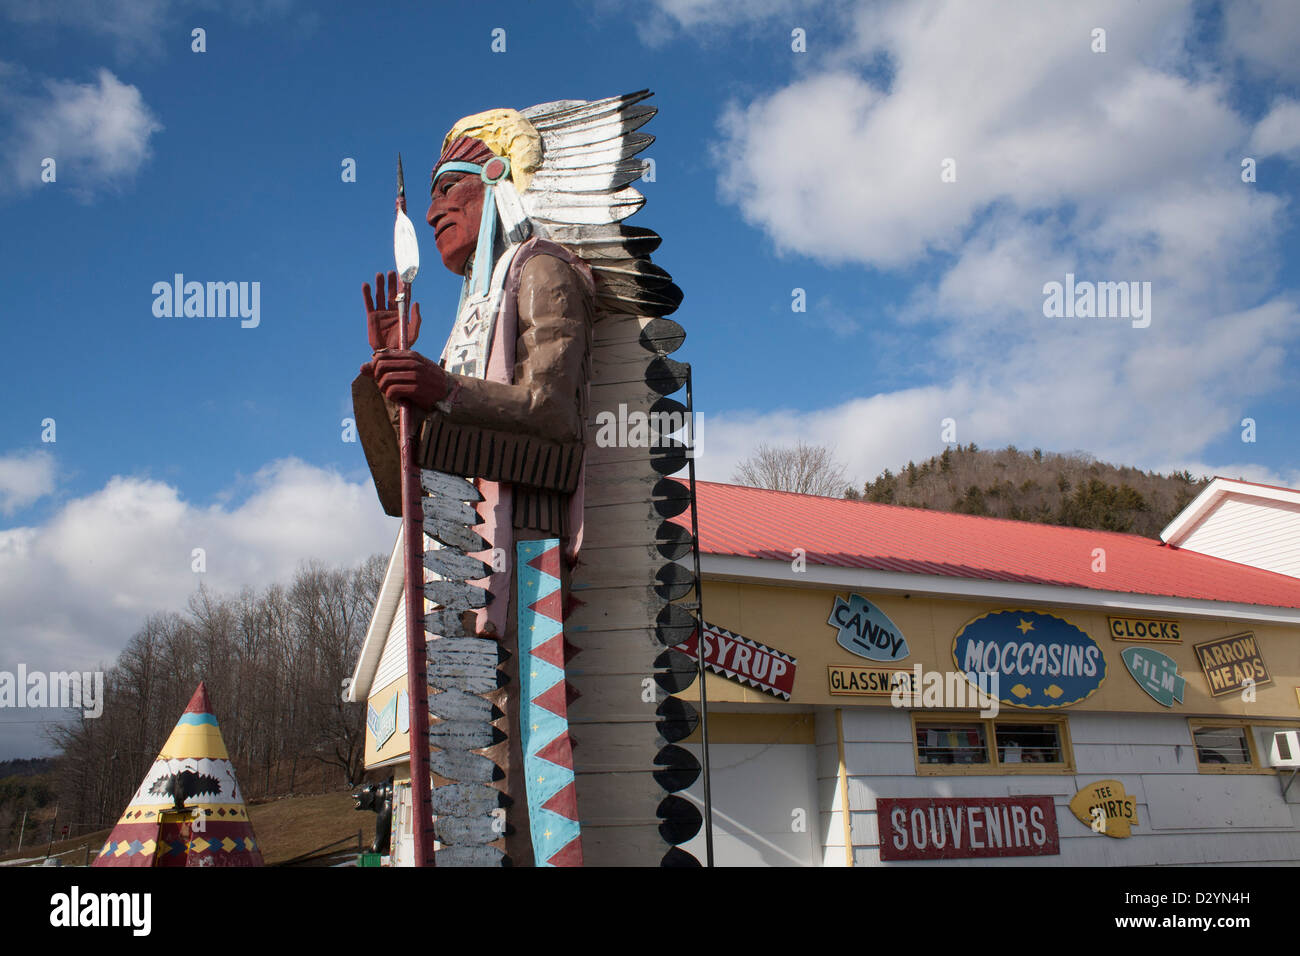 Un negozio di souvenir con Native American merci e una gigantesca scultura in Nuova Inghilterra è chiuso per la stagione invernale. Foto Stock